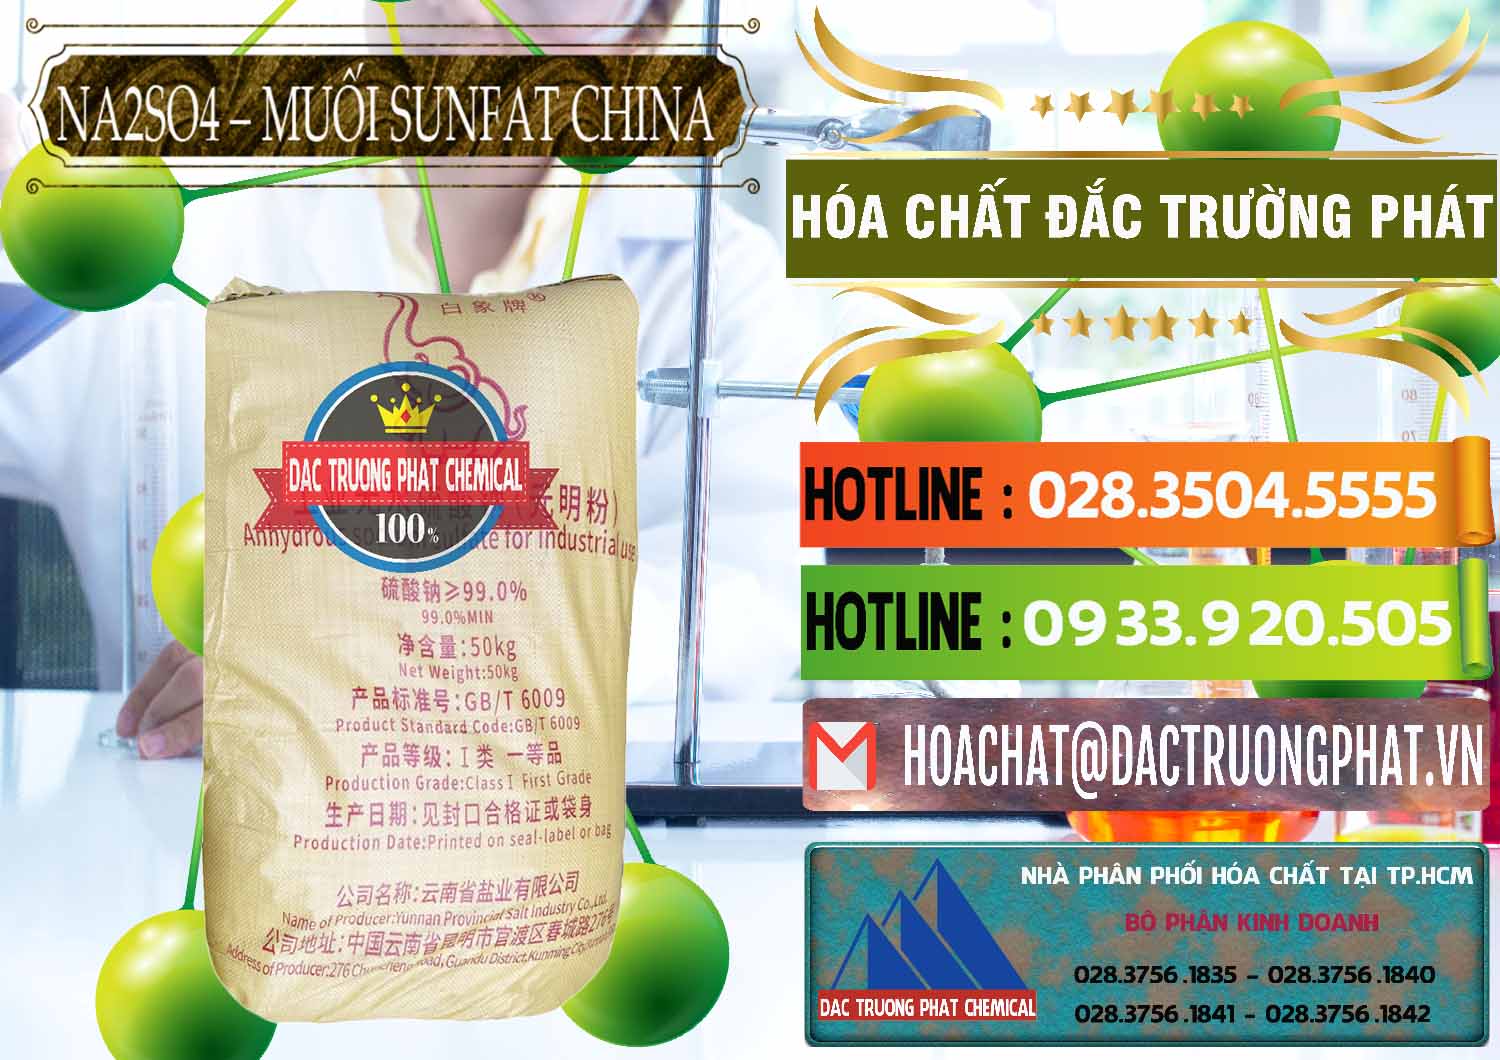 Đơn vị chuyên nhập khẩu và bán Sodium Sulphate - Muối Sunfat Na2SO4 Logo Con Voi Trung Quốc China - 0409 - Nơi chuyên phân phối _ kinh doanh hóa chất tại TP.HCM - cungcaphoachat.com.vn